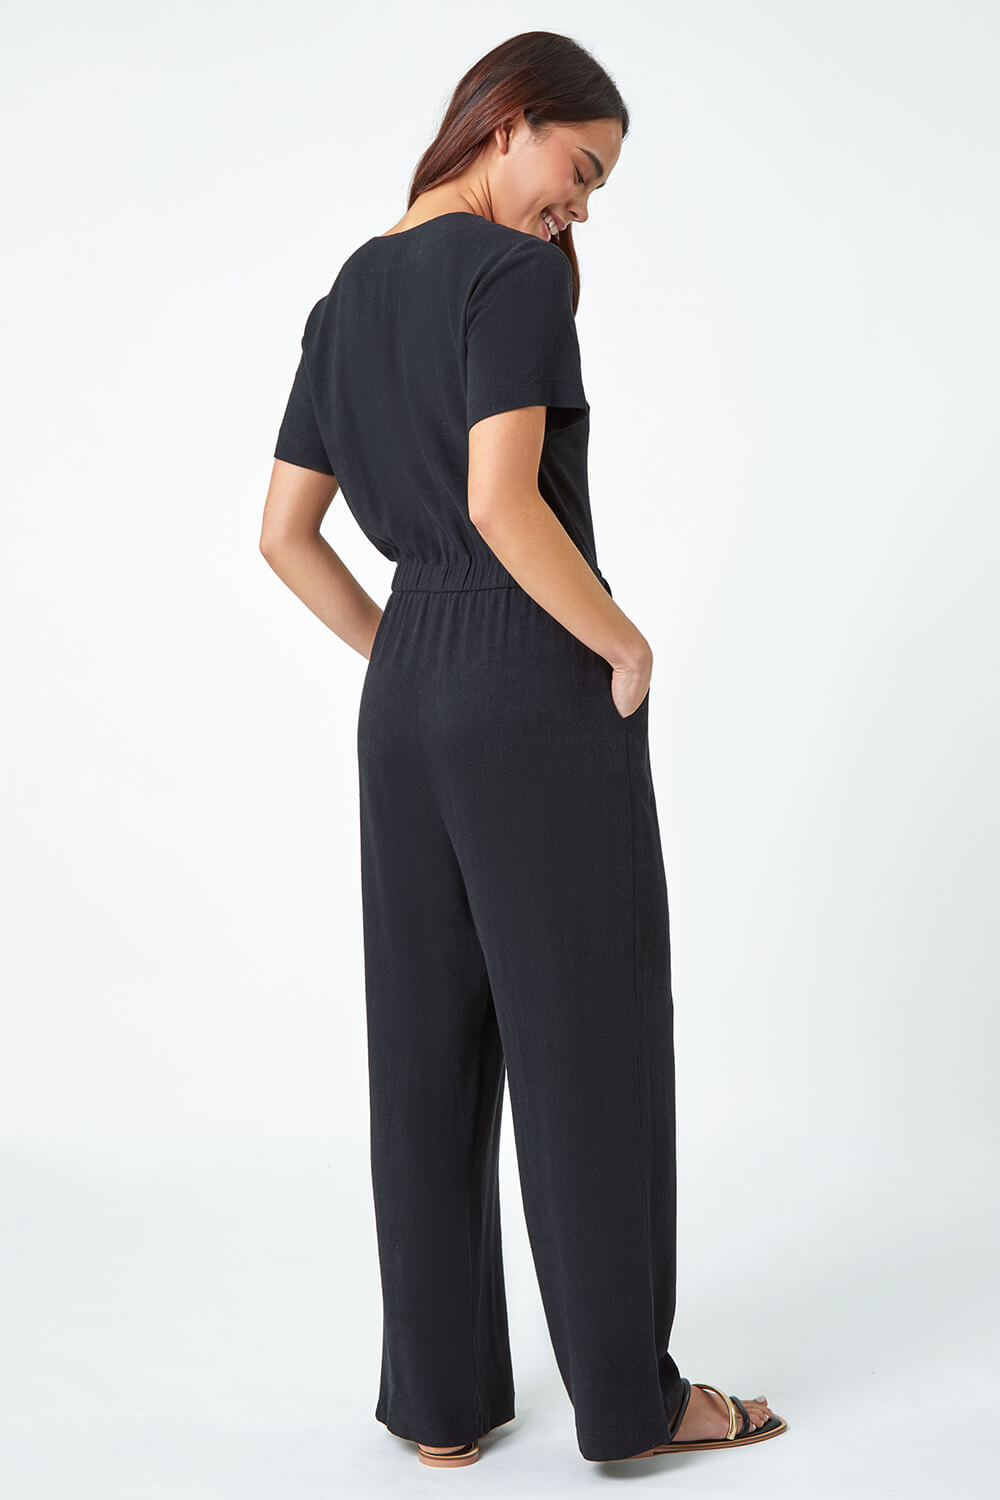 Black Petite Linen Blend Jumpsuit, Image 3 of 5